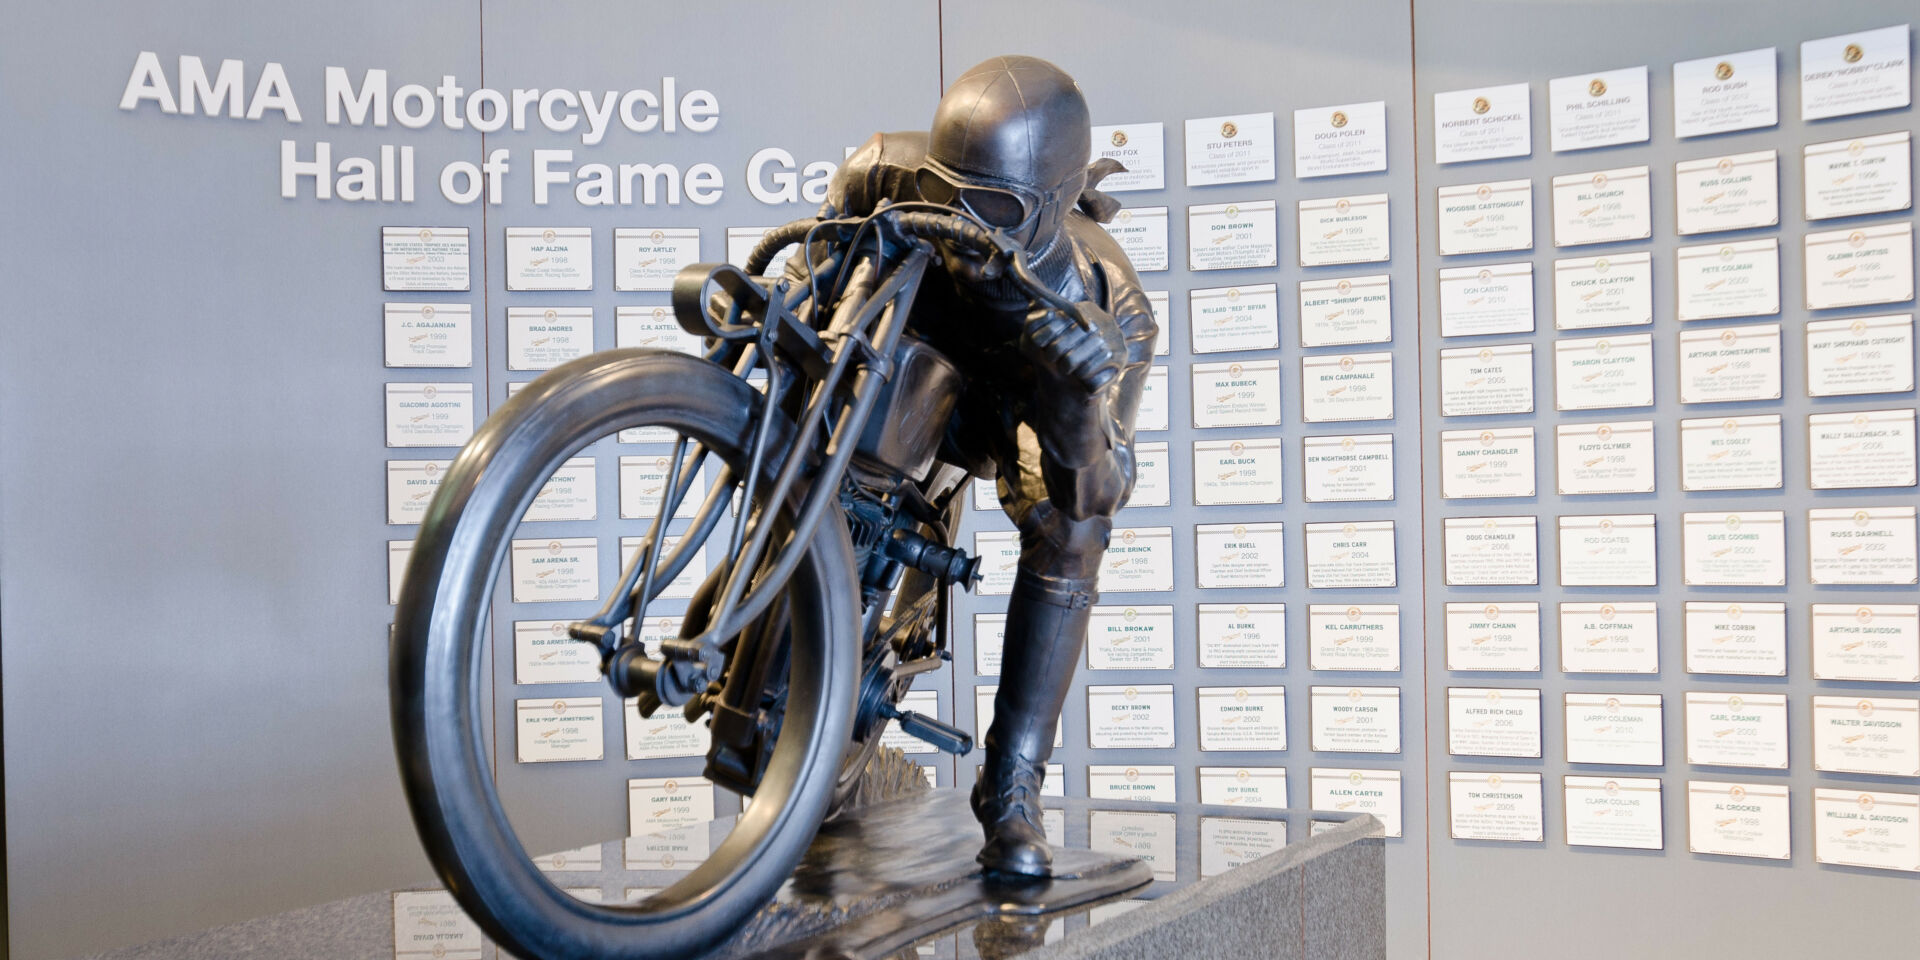 AMA Motorcycle Hall of Fame Glory Days Statue. Photo courtesy AMA.